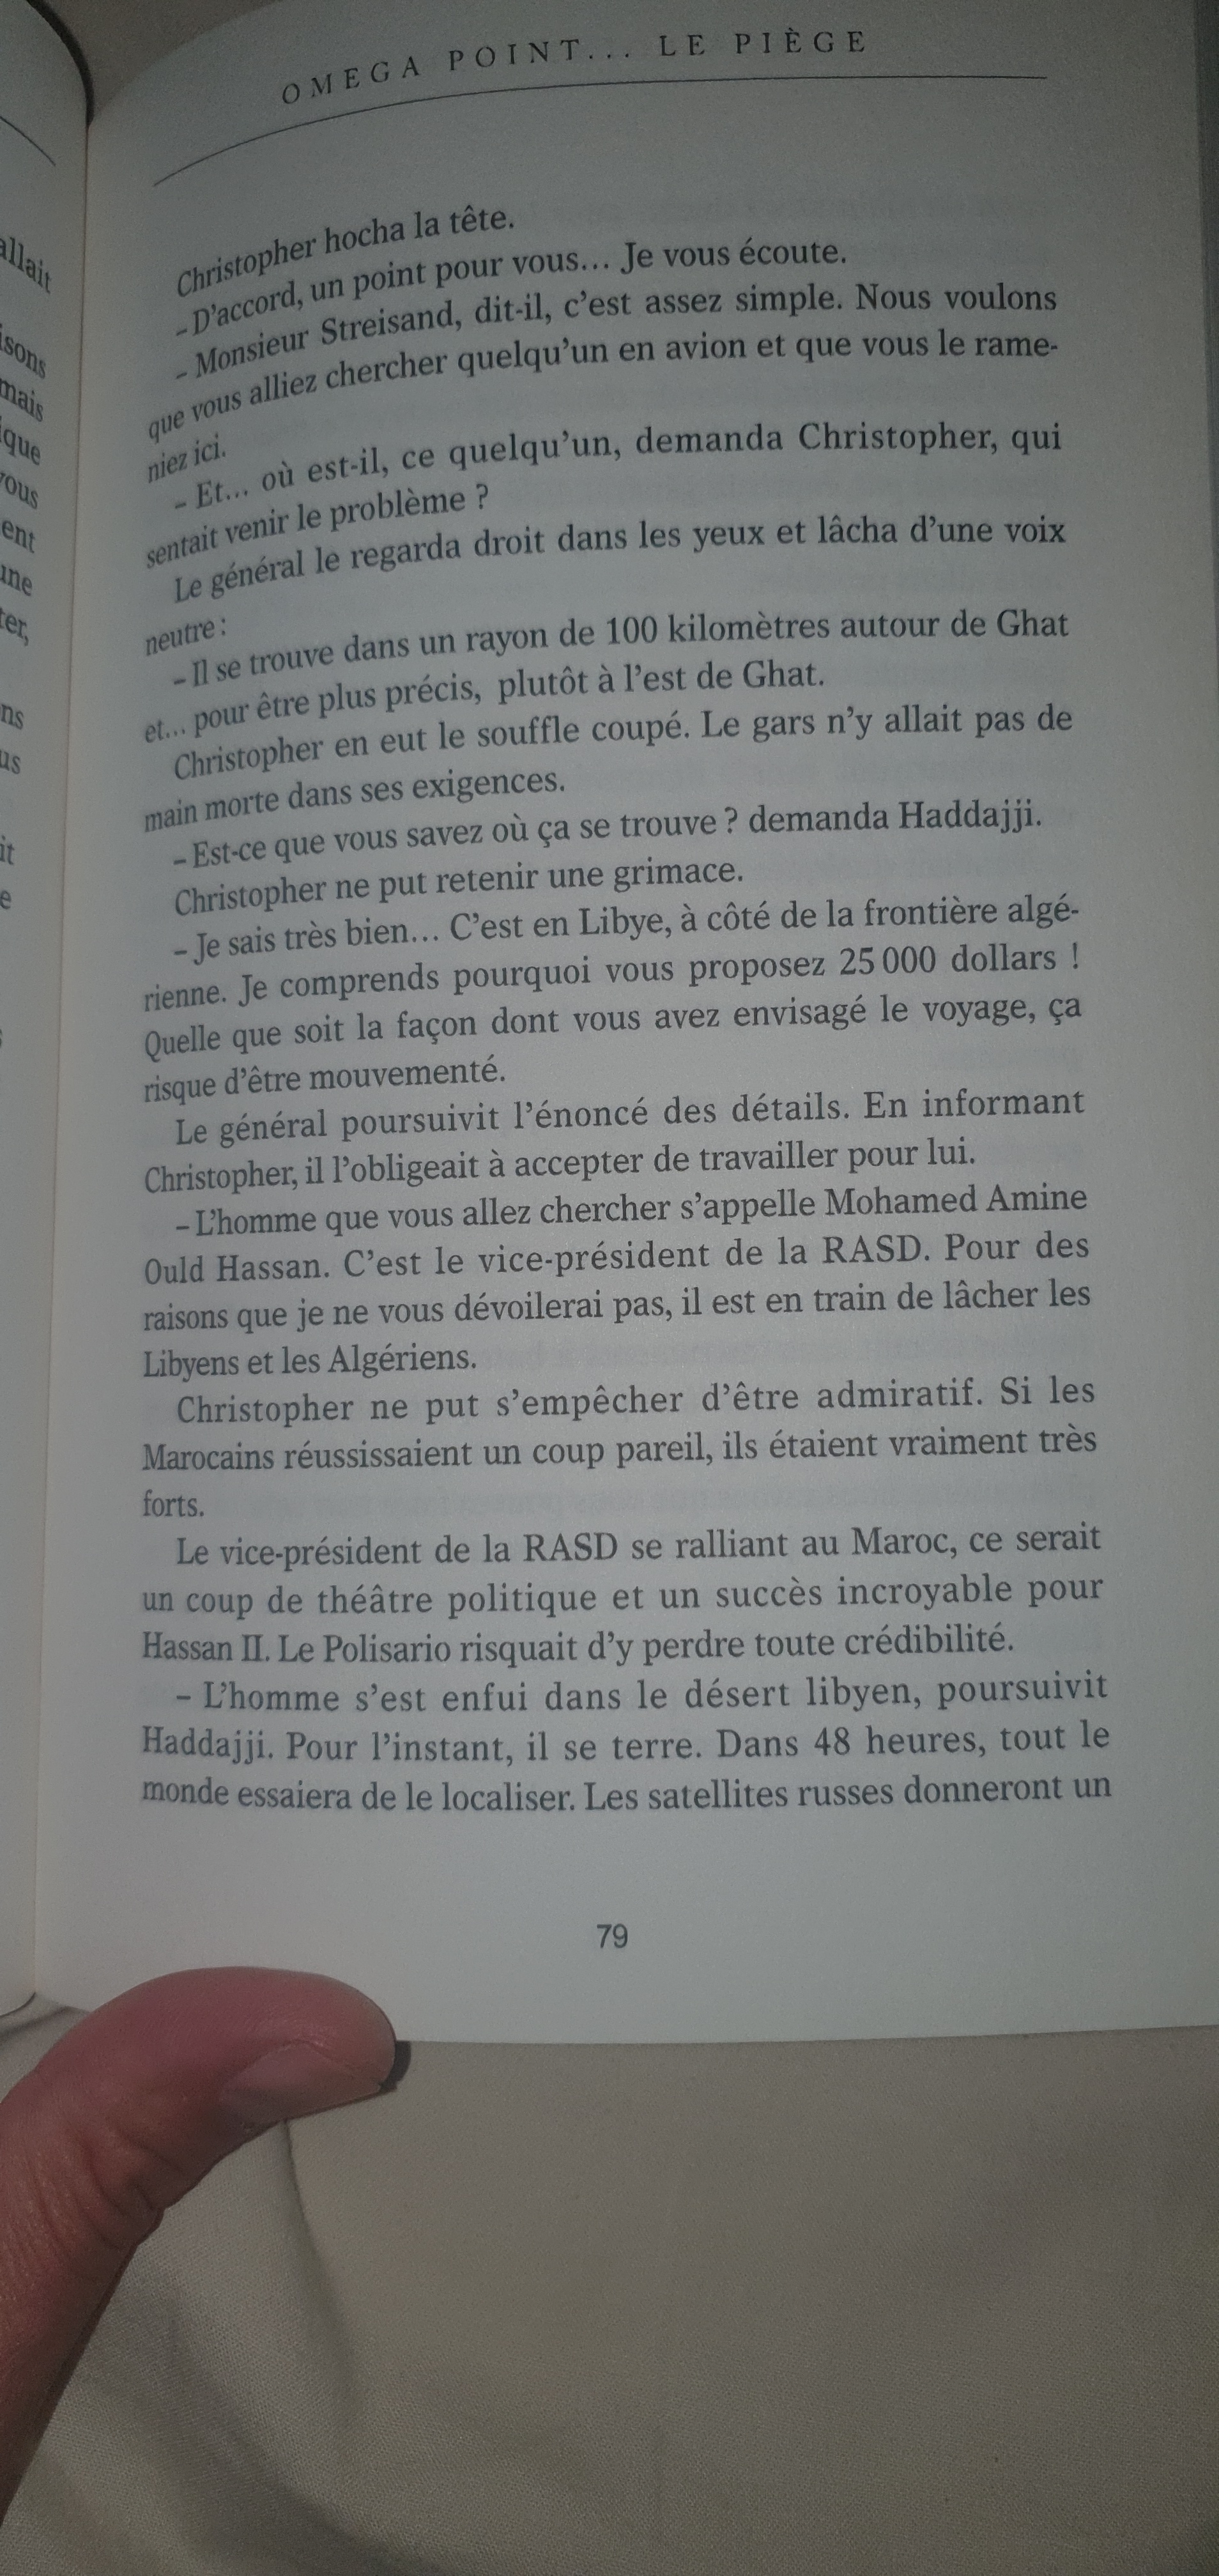 Le conflit armé du sahara marocain - Page 20 Wfxz